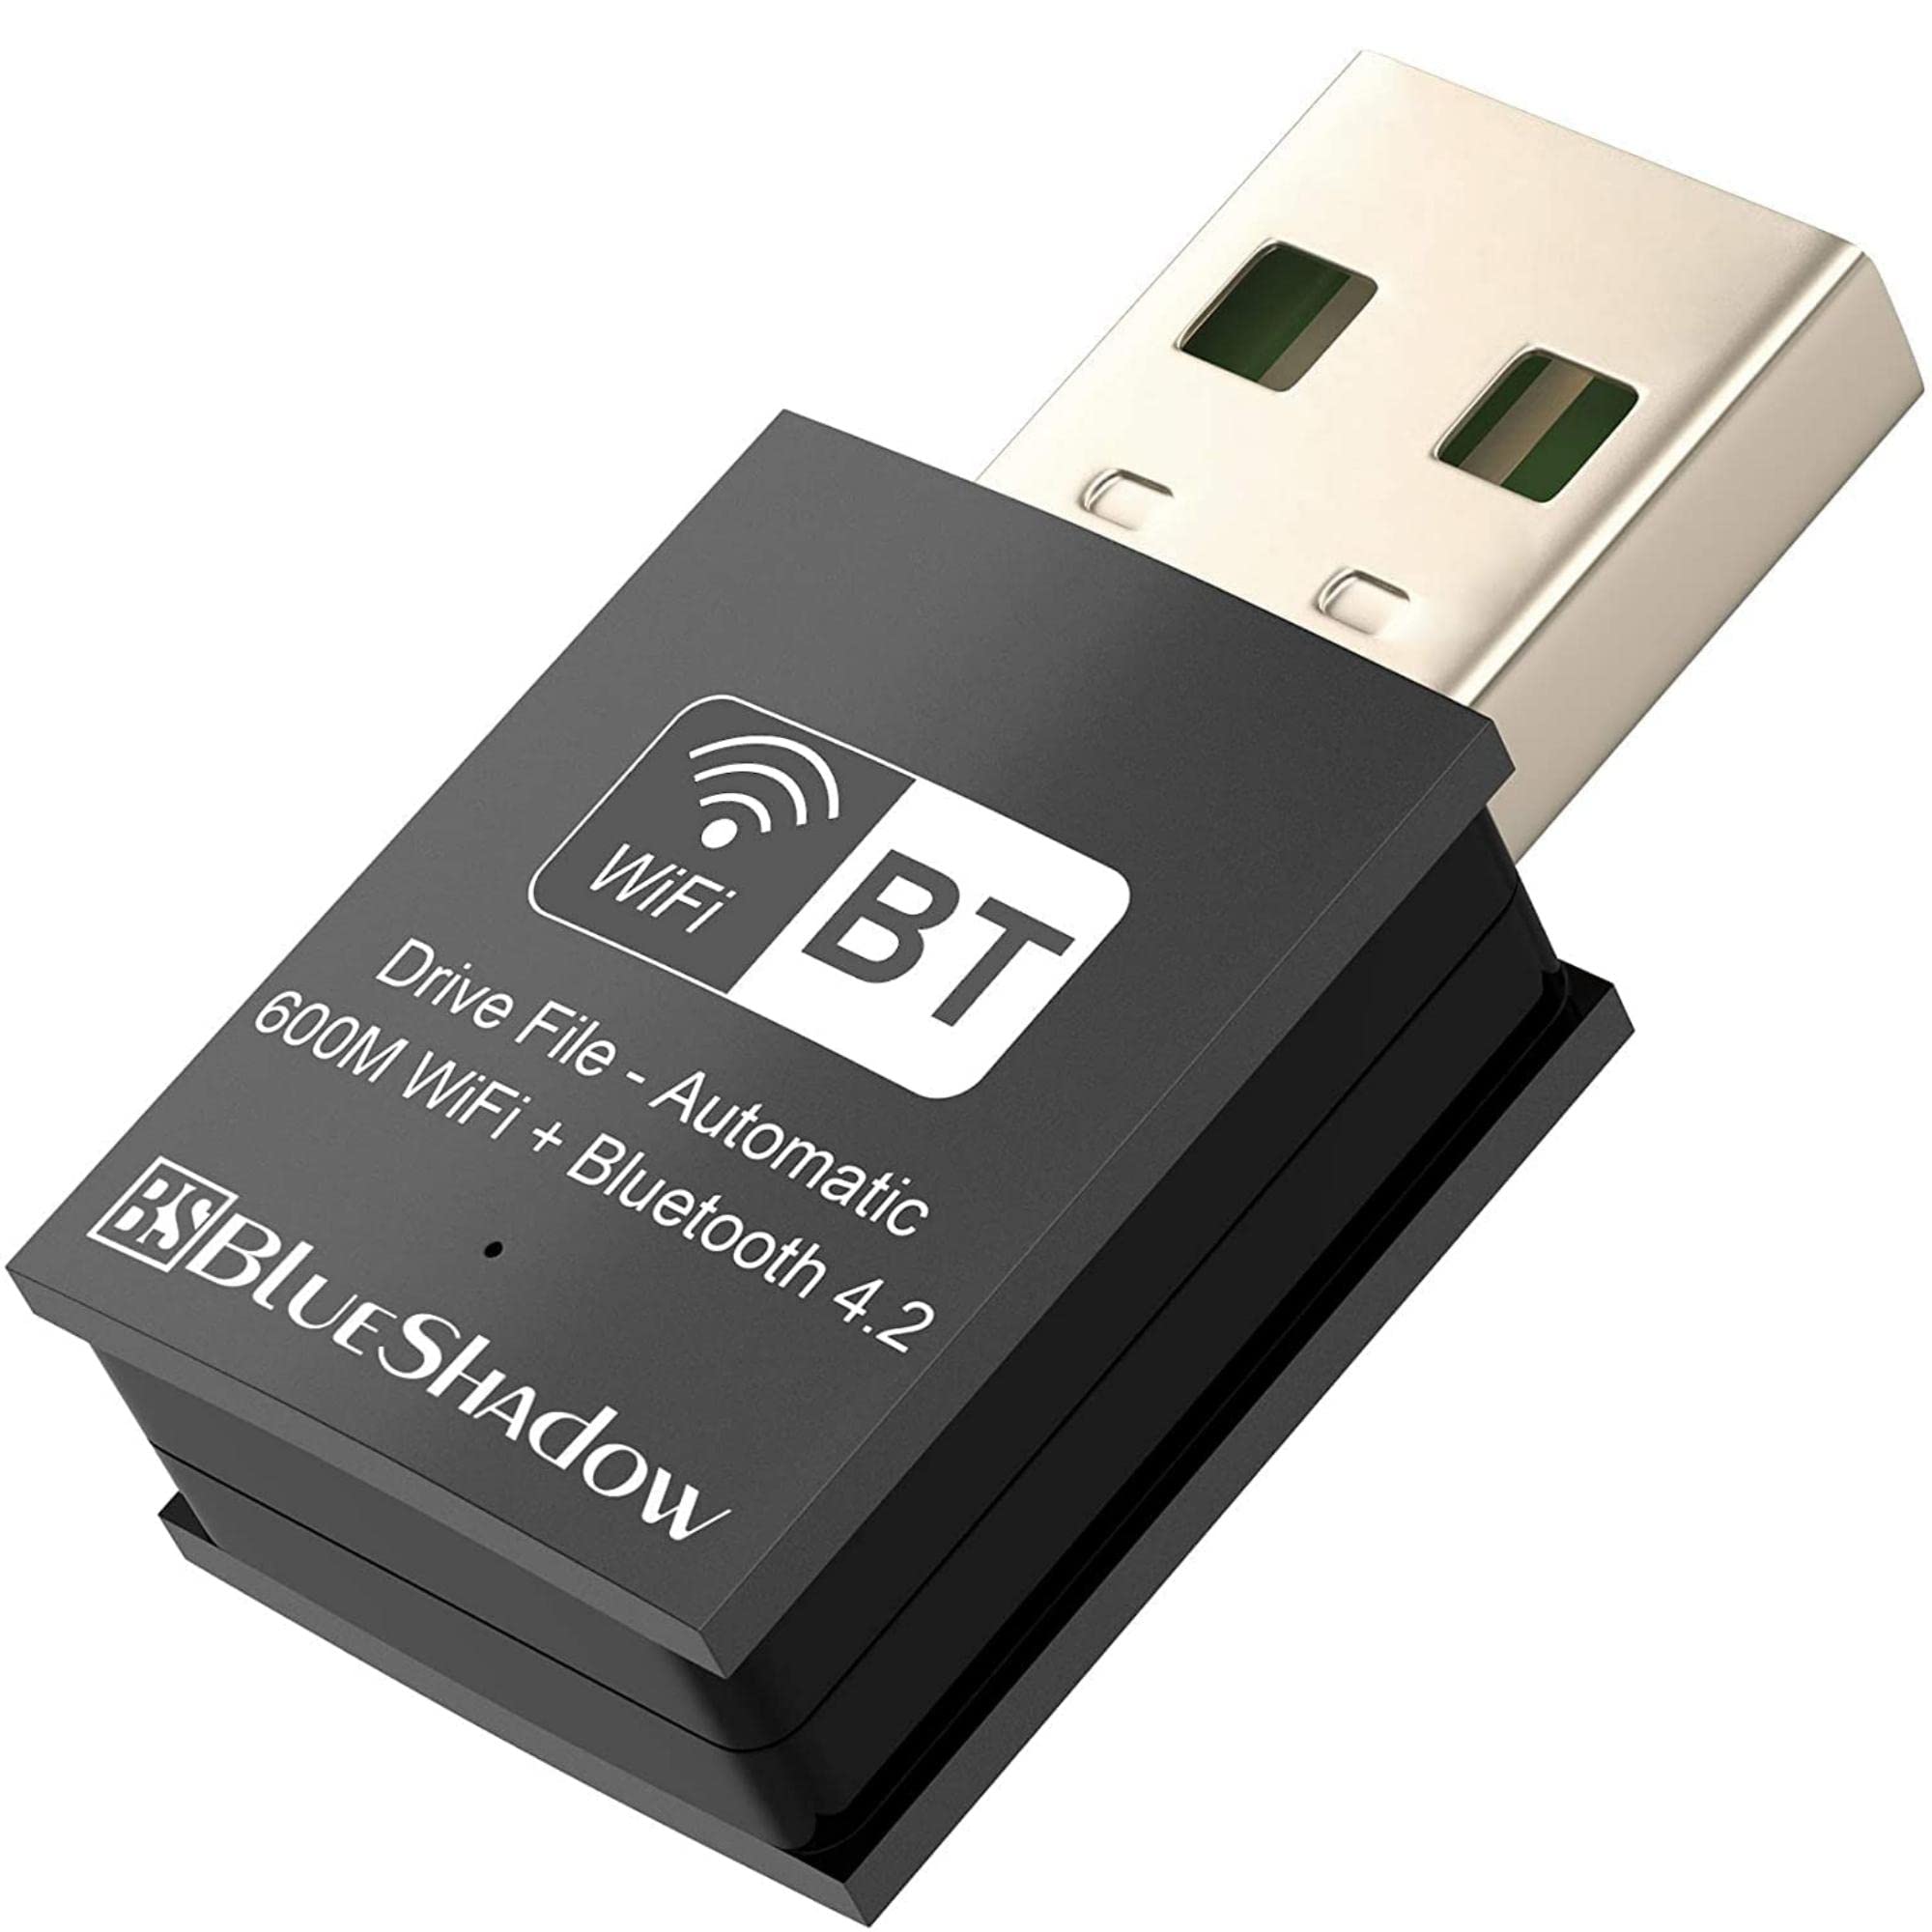 LM816 USB WiFi @ 2.4 GHz